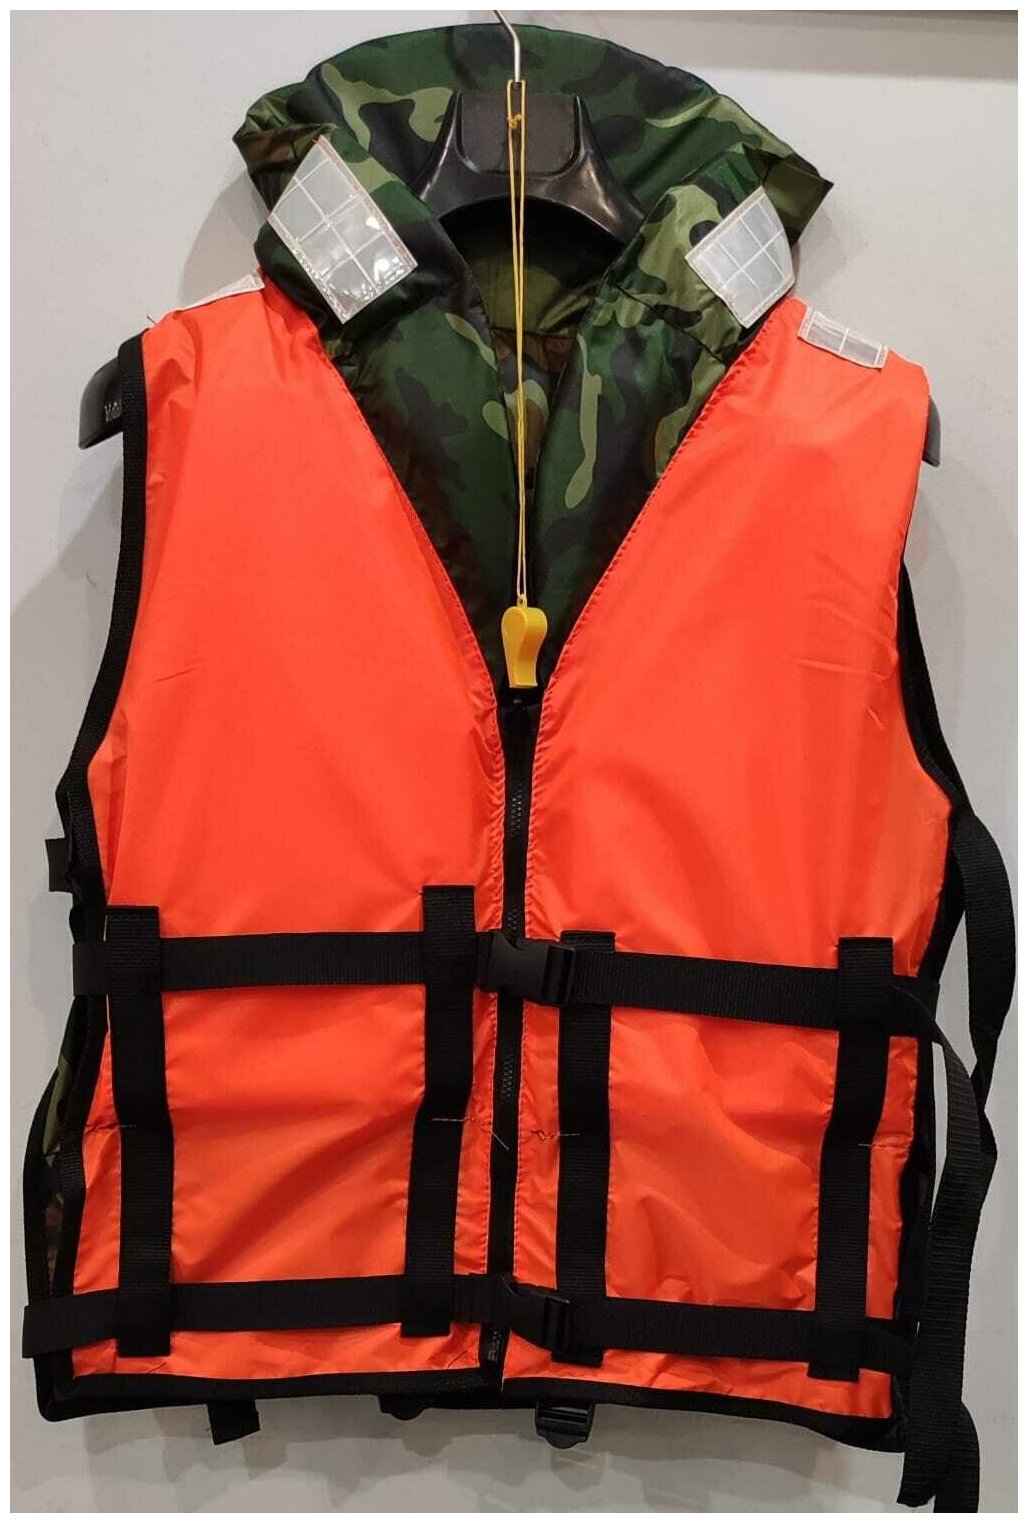 Спасательный жилет МотоБот (универсальный )/Аксессуар для лодки ПВХ .